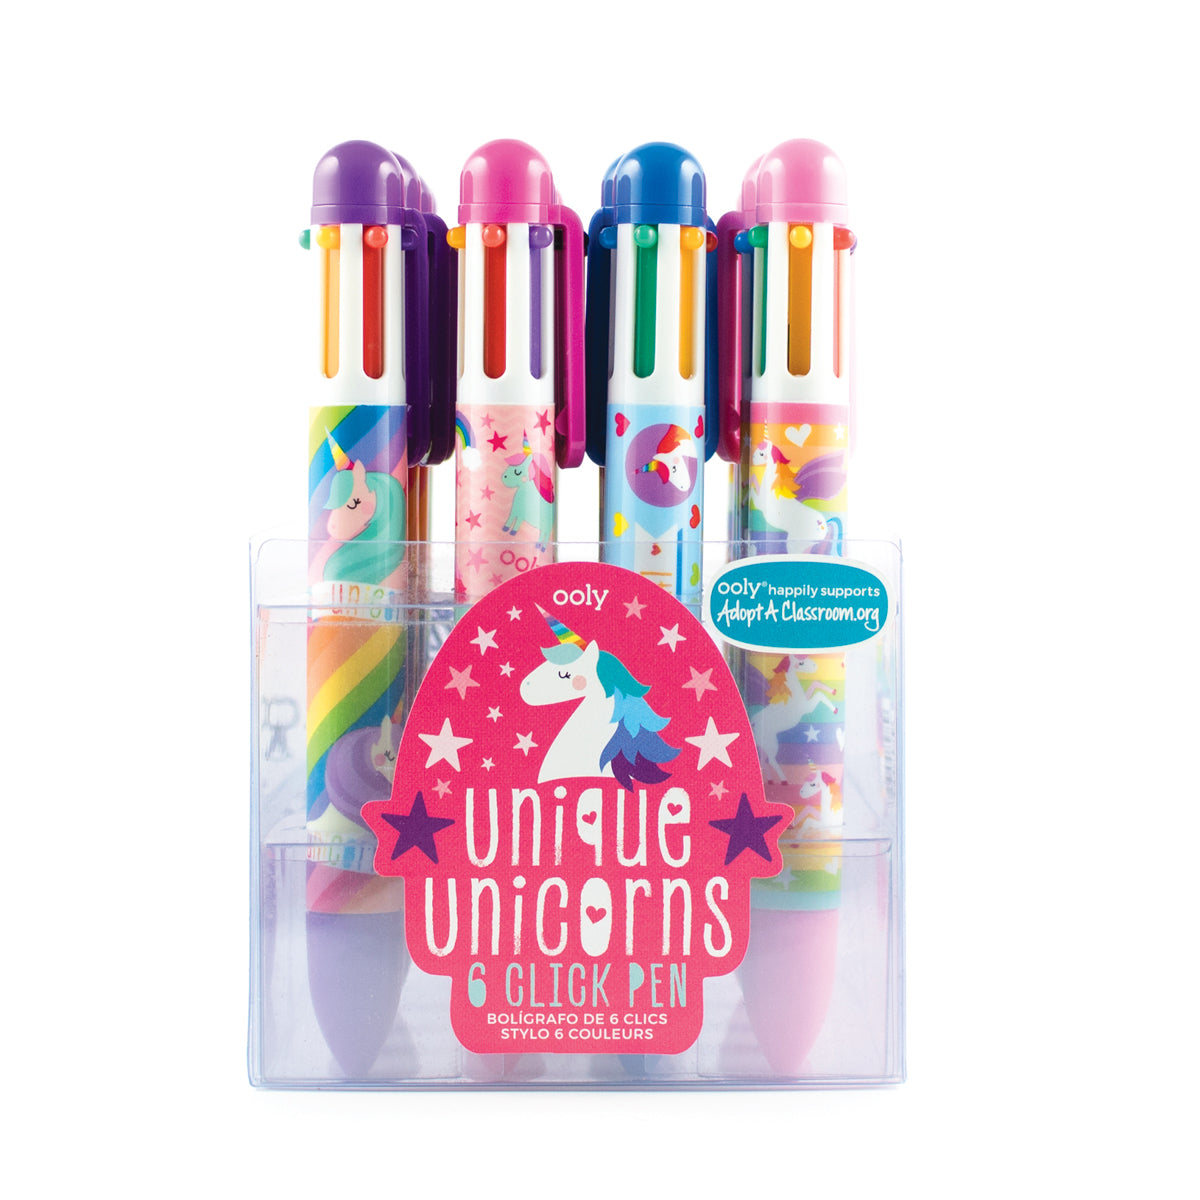 6-Color Pens